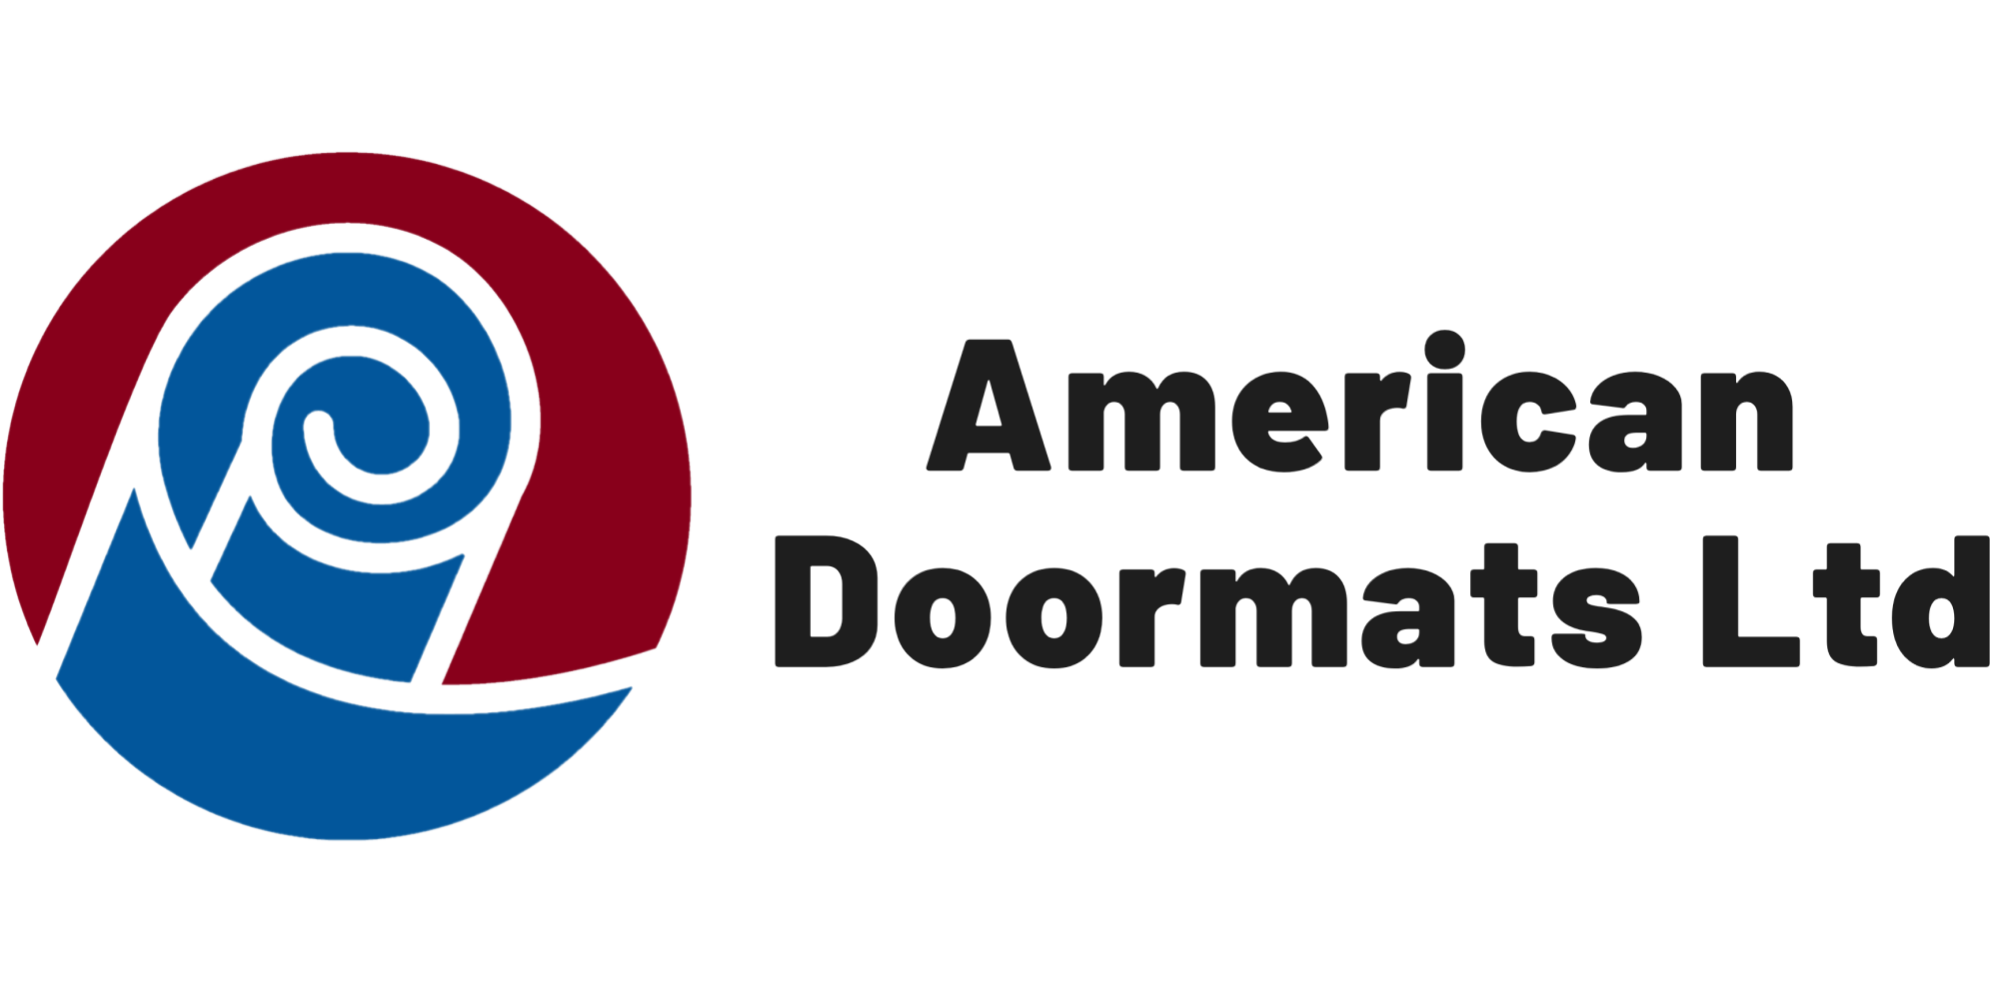 http://www.americandoormats.com/cdn/shop/files/American_Doormats-RegularLogo-Rectangular-V2_193a5af7-7bd6-436d-adc1-39d72b406166.png?v=1622819613